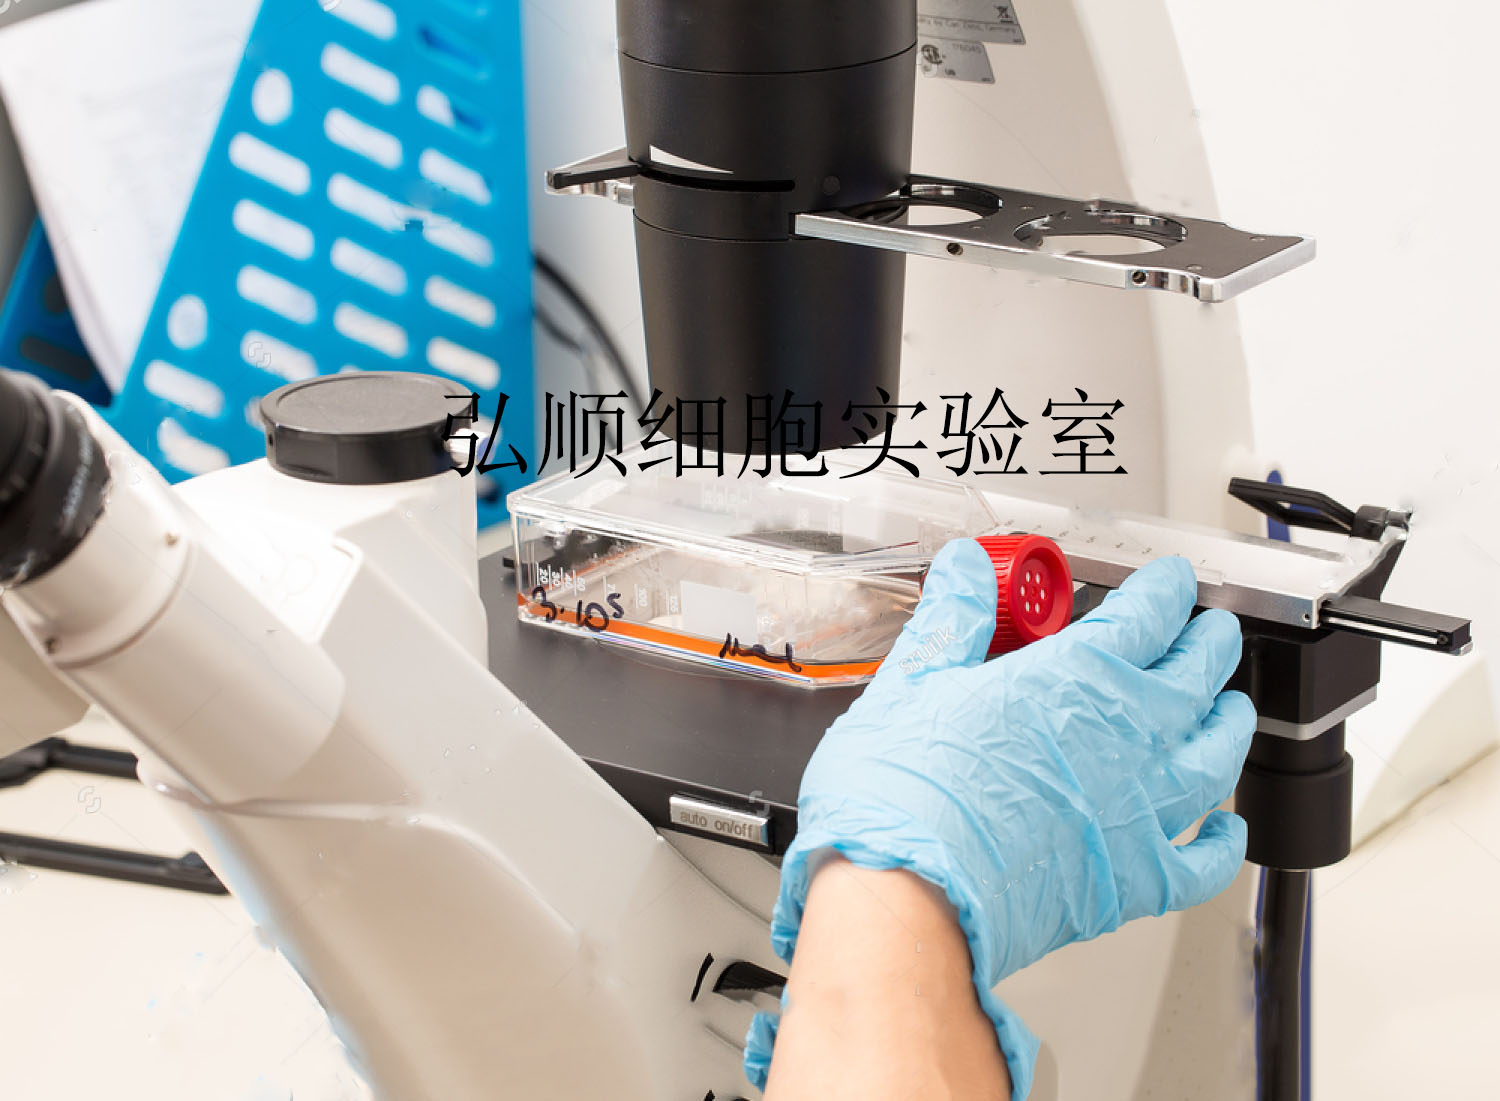 M 1细胞 小鼠肾集合管细胞价格厂家 上海弘顺生物科技有限公司